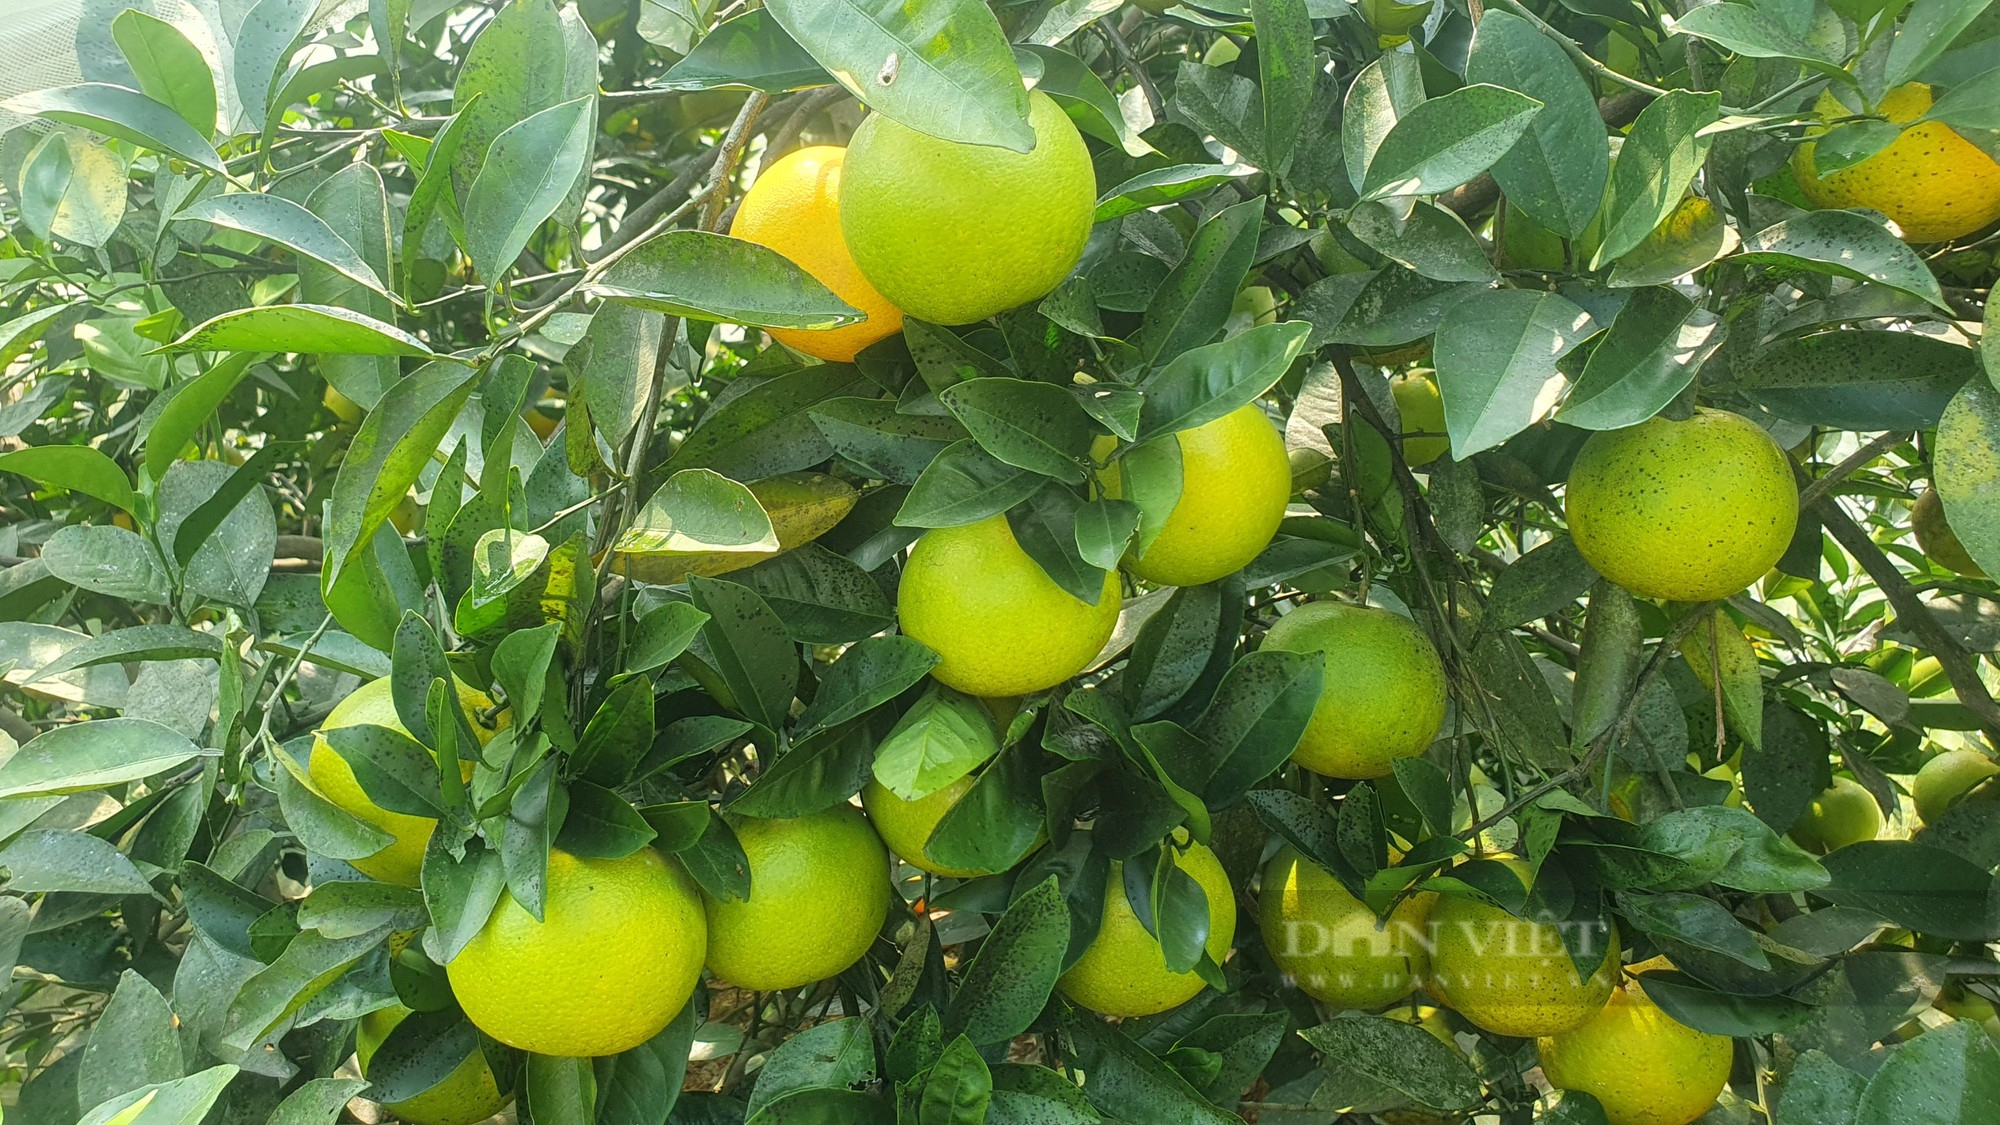 Vườn cam “mắc màn” trĩu quả của nông dân Hà Tĩnh, chưa hô bán, thương lái đặt cọc quả còn trên cây - Ảnh 7.